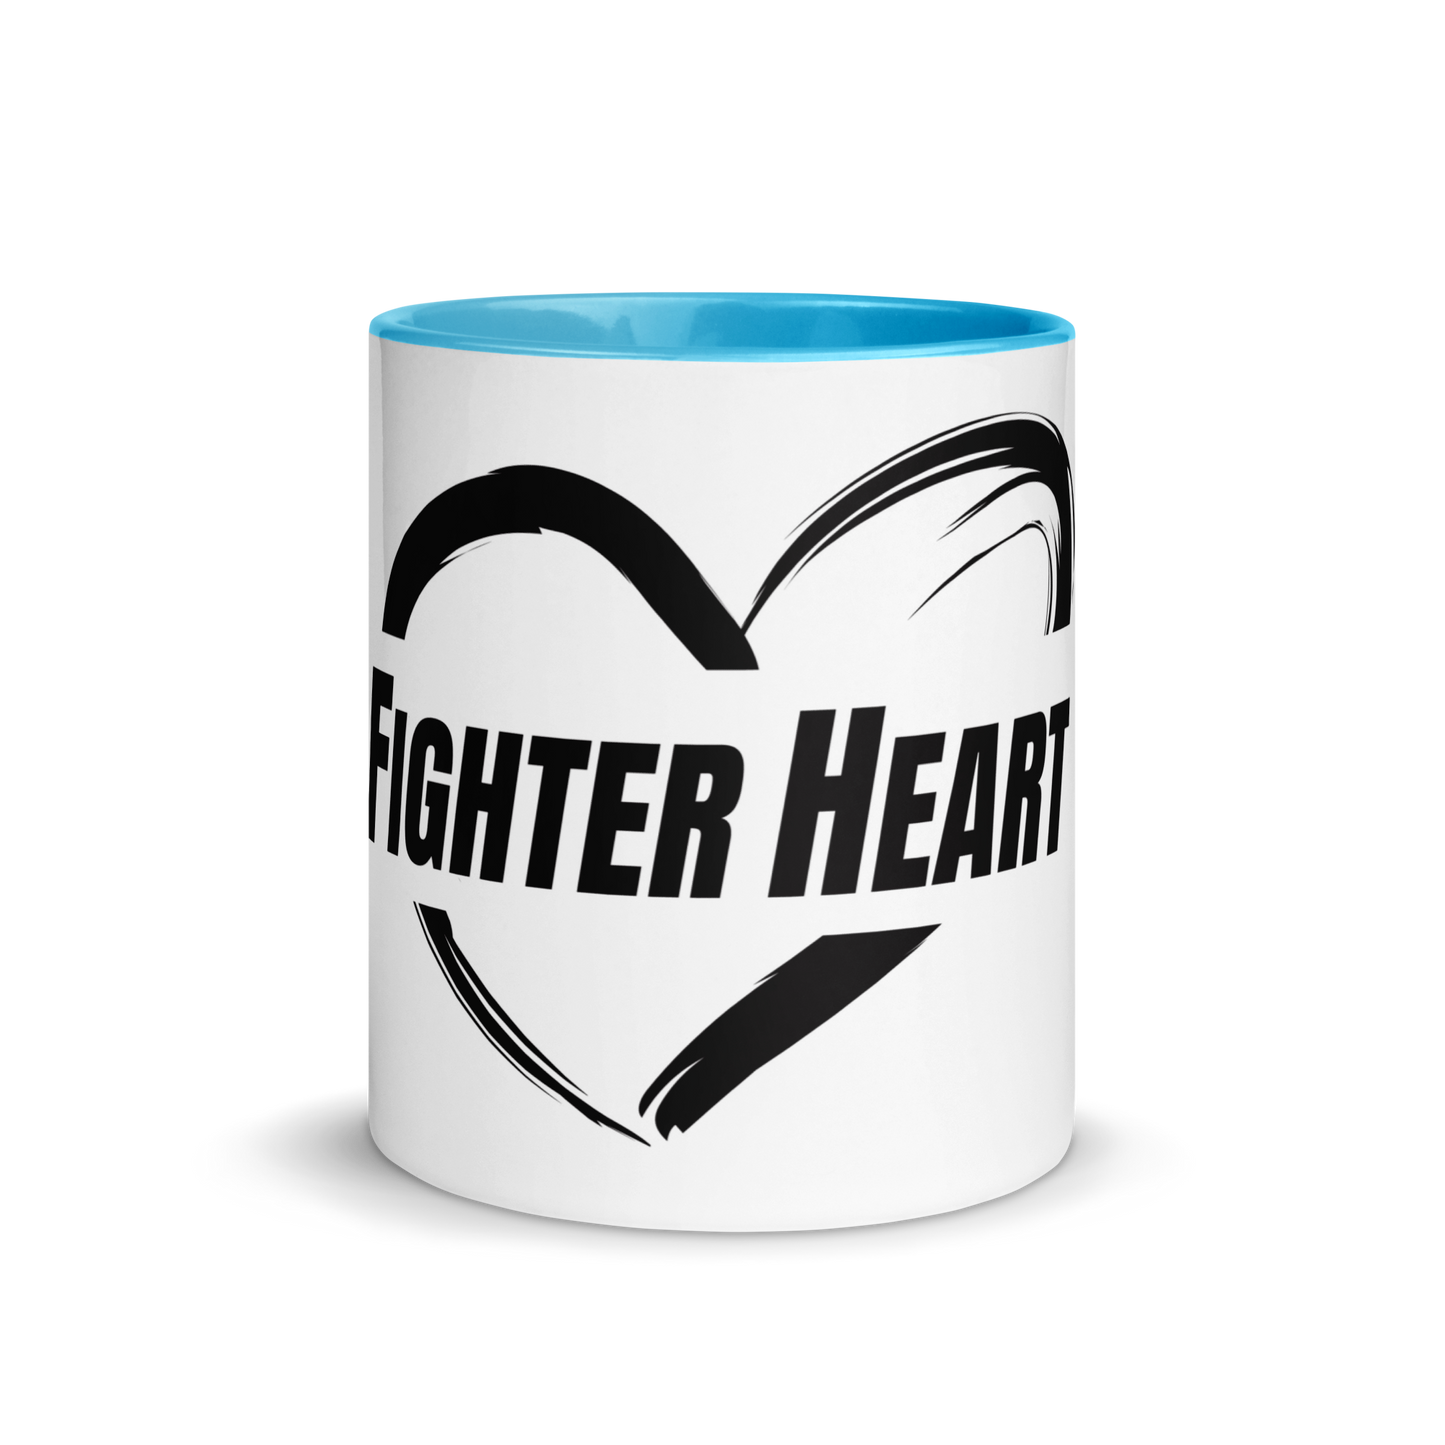 FighterHeart Colored Mug - multi-color